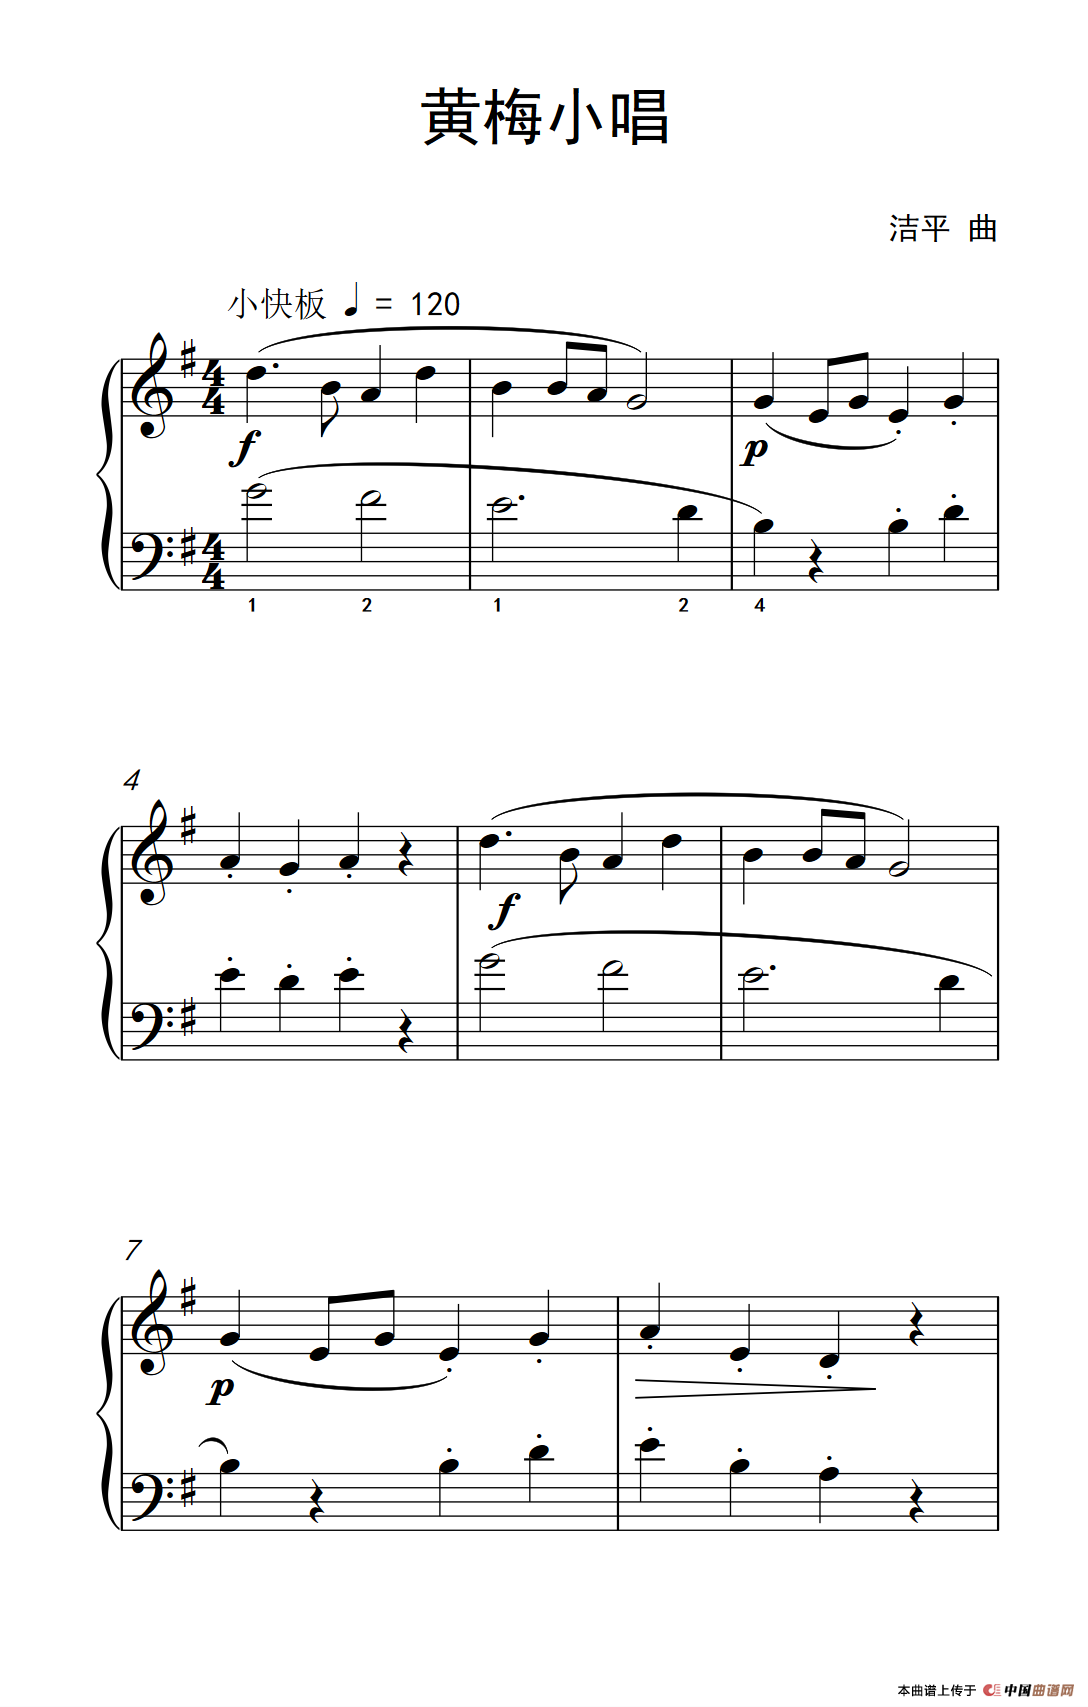 《黄梅小唱》钢琴曲谱图分享